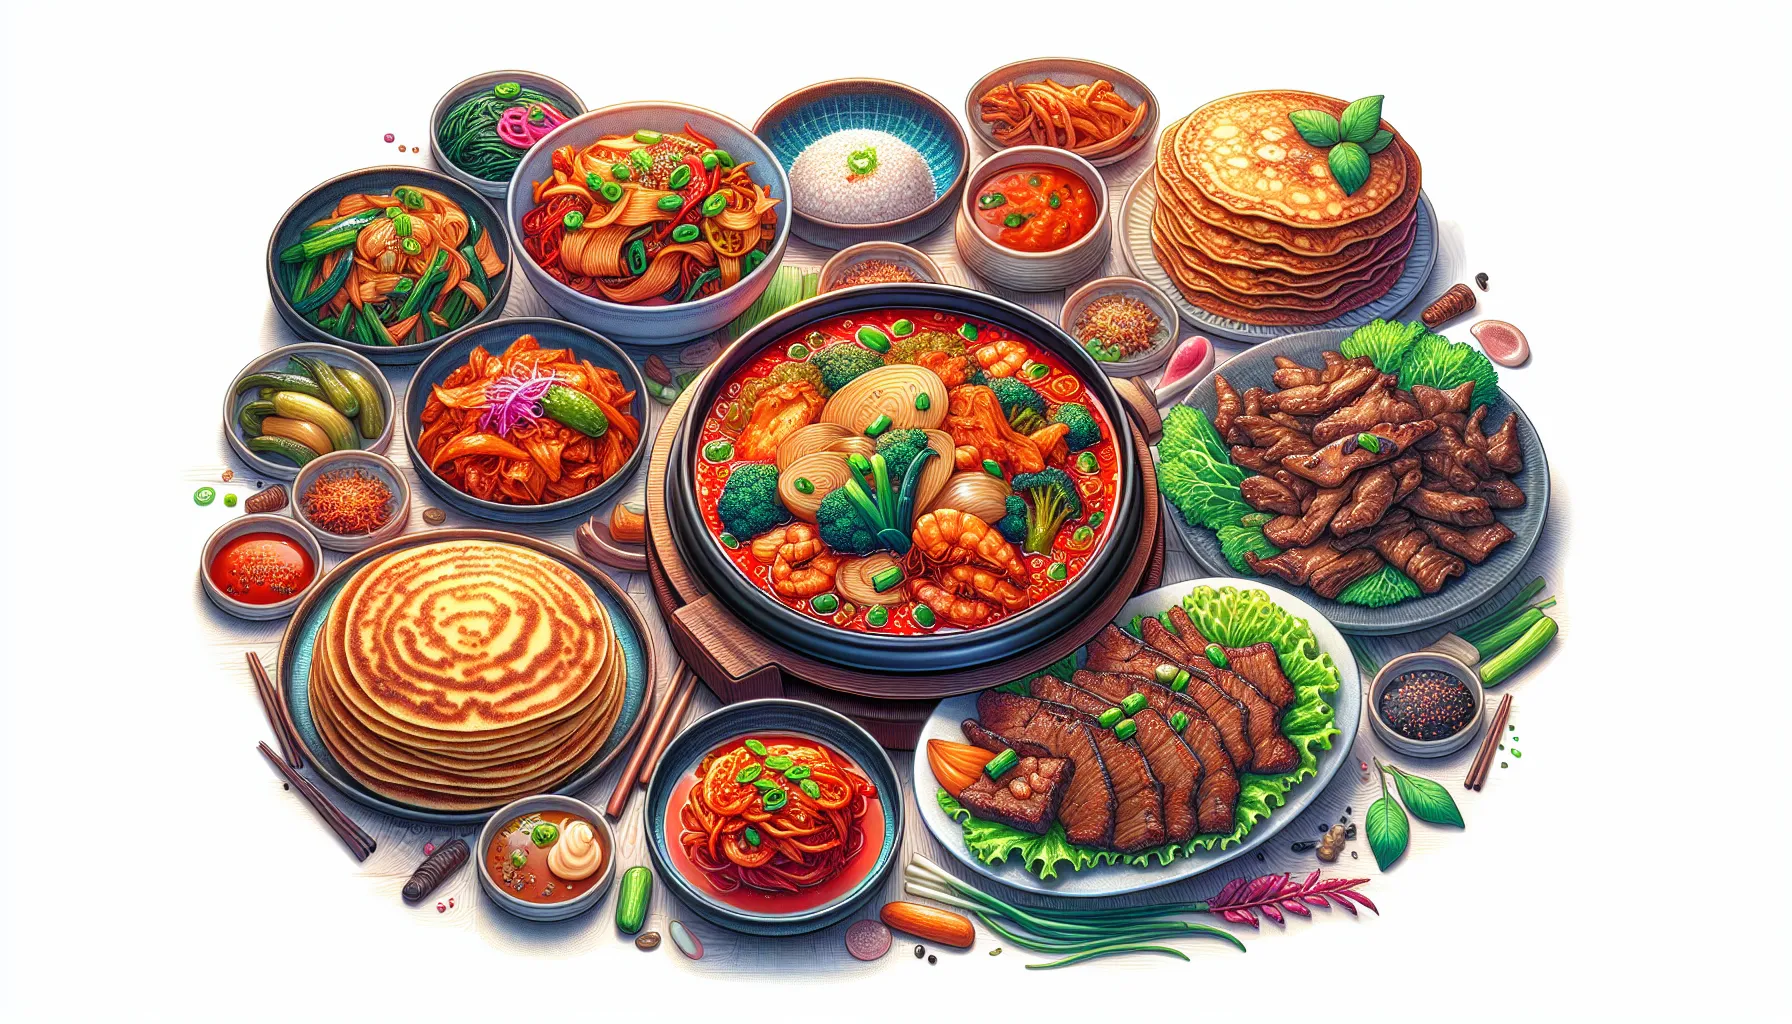 A Coreia do Norte possui uma variedade de comidas típicas que refletem a cultura e os recursos disponíveis no país. Aqui está um guia gastronômico das comidas típicas da Coreia do Norte:

1. Kimchi: O kimchi é um prato essencial na culinária coreana. É feito de repolho fermentado com pimenta, alho, gengibre e outros ingredientes. O kimchi